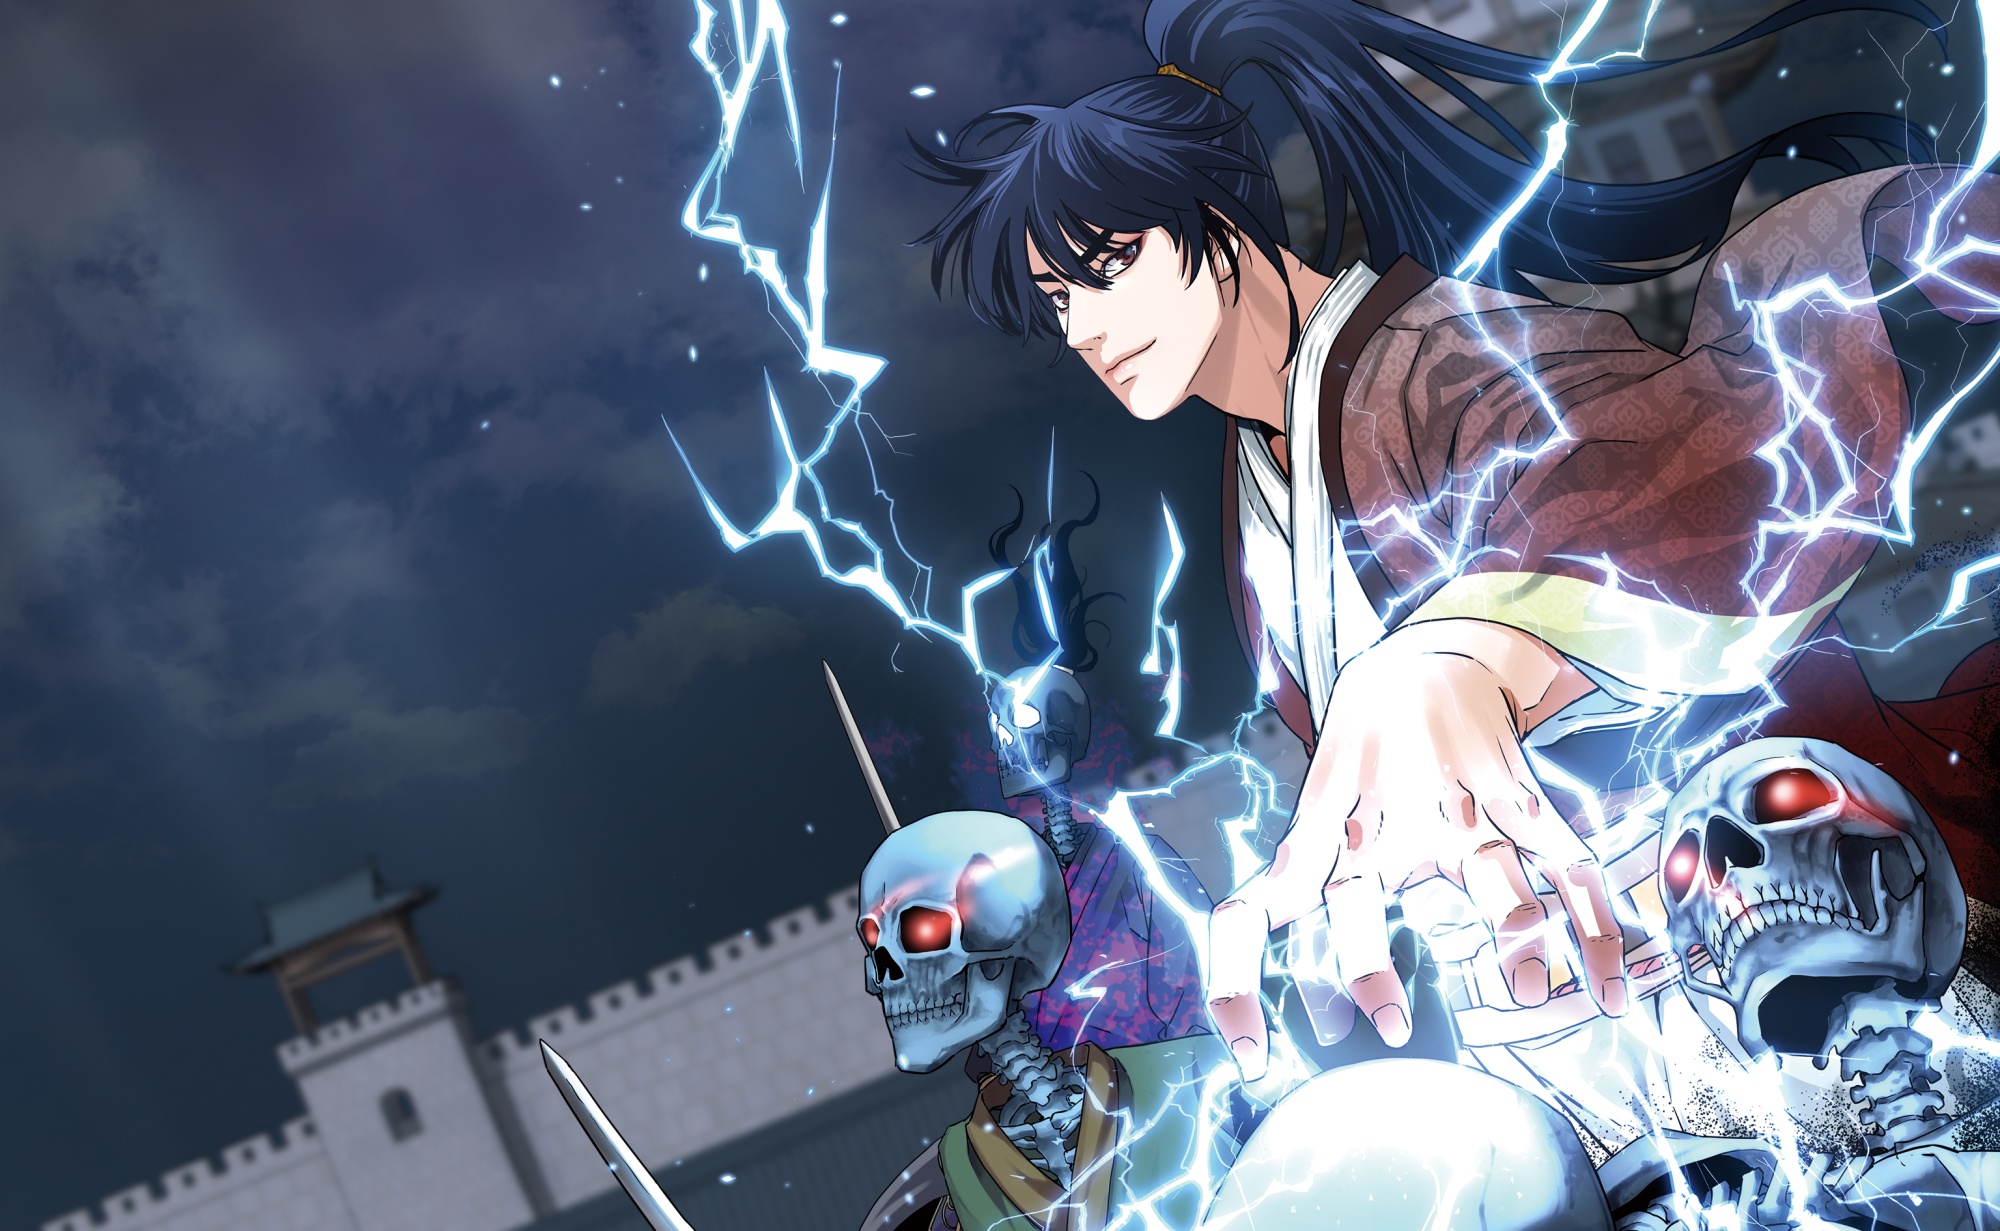 Bom tấn webtoon Tower of God chính thức được chuyển thể thành anime, ra mắt  ngay đầu năm nay!